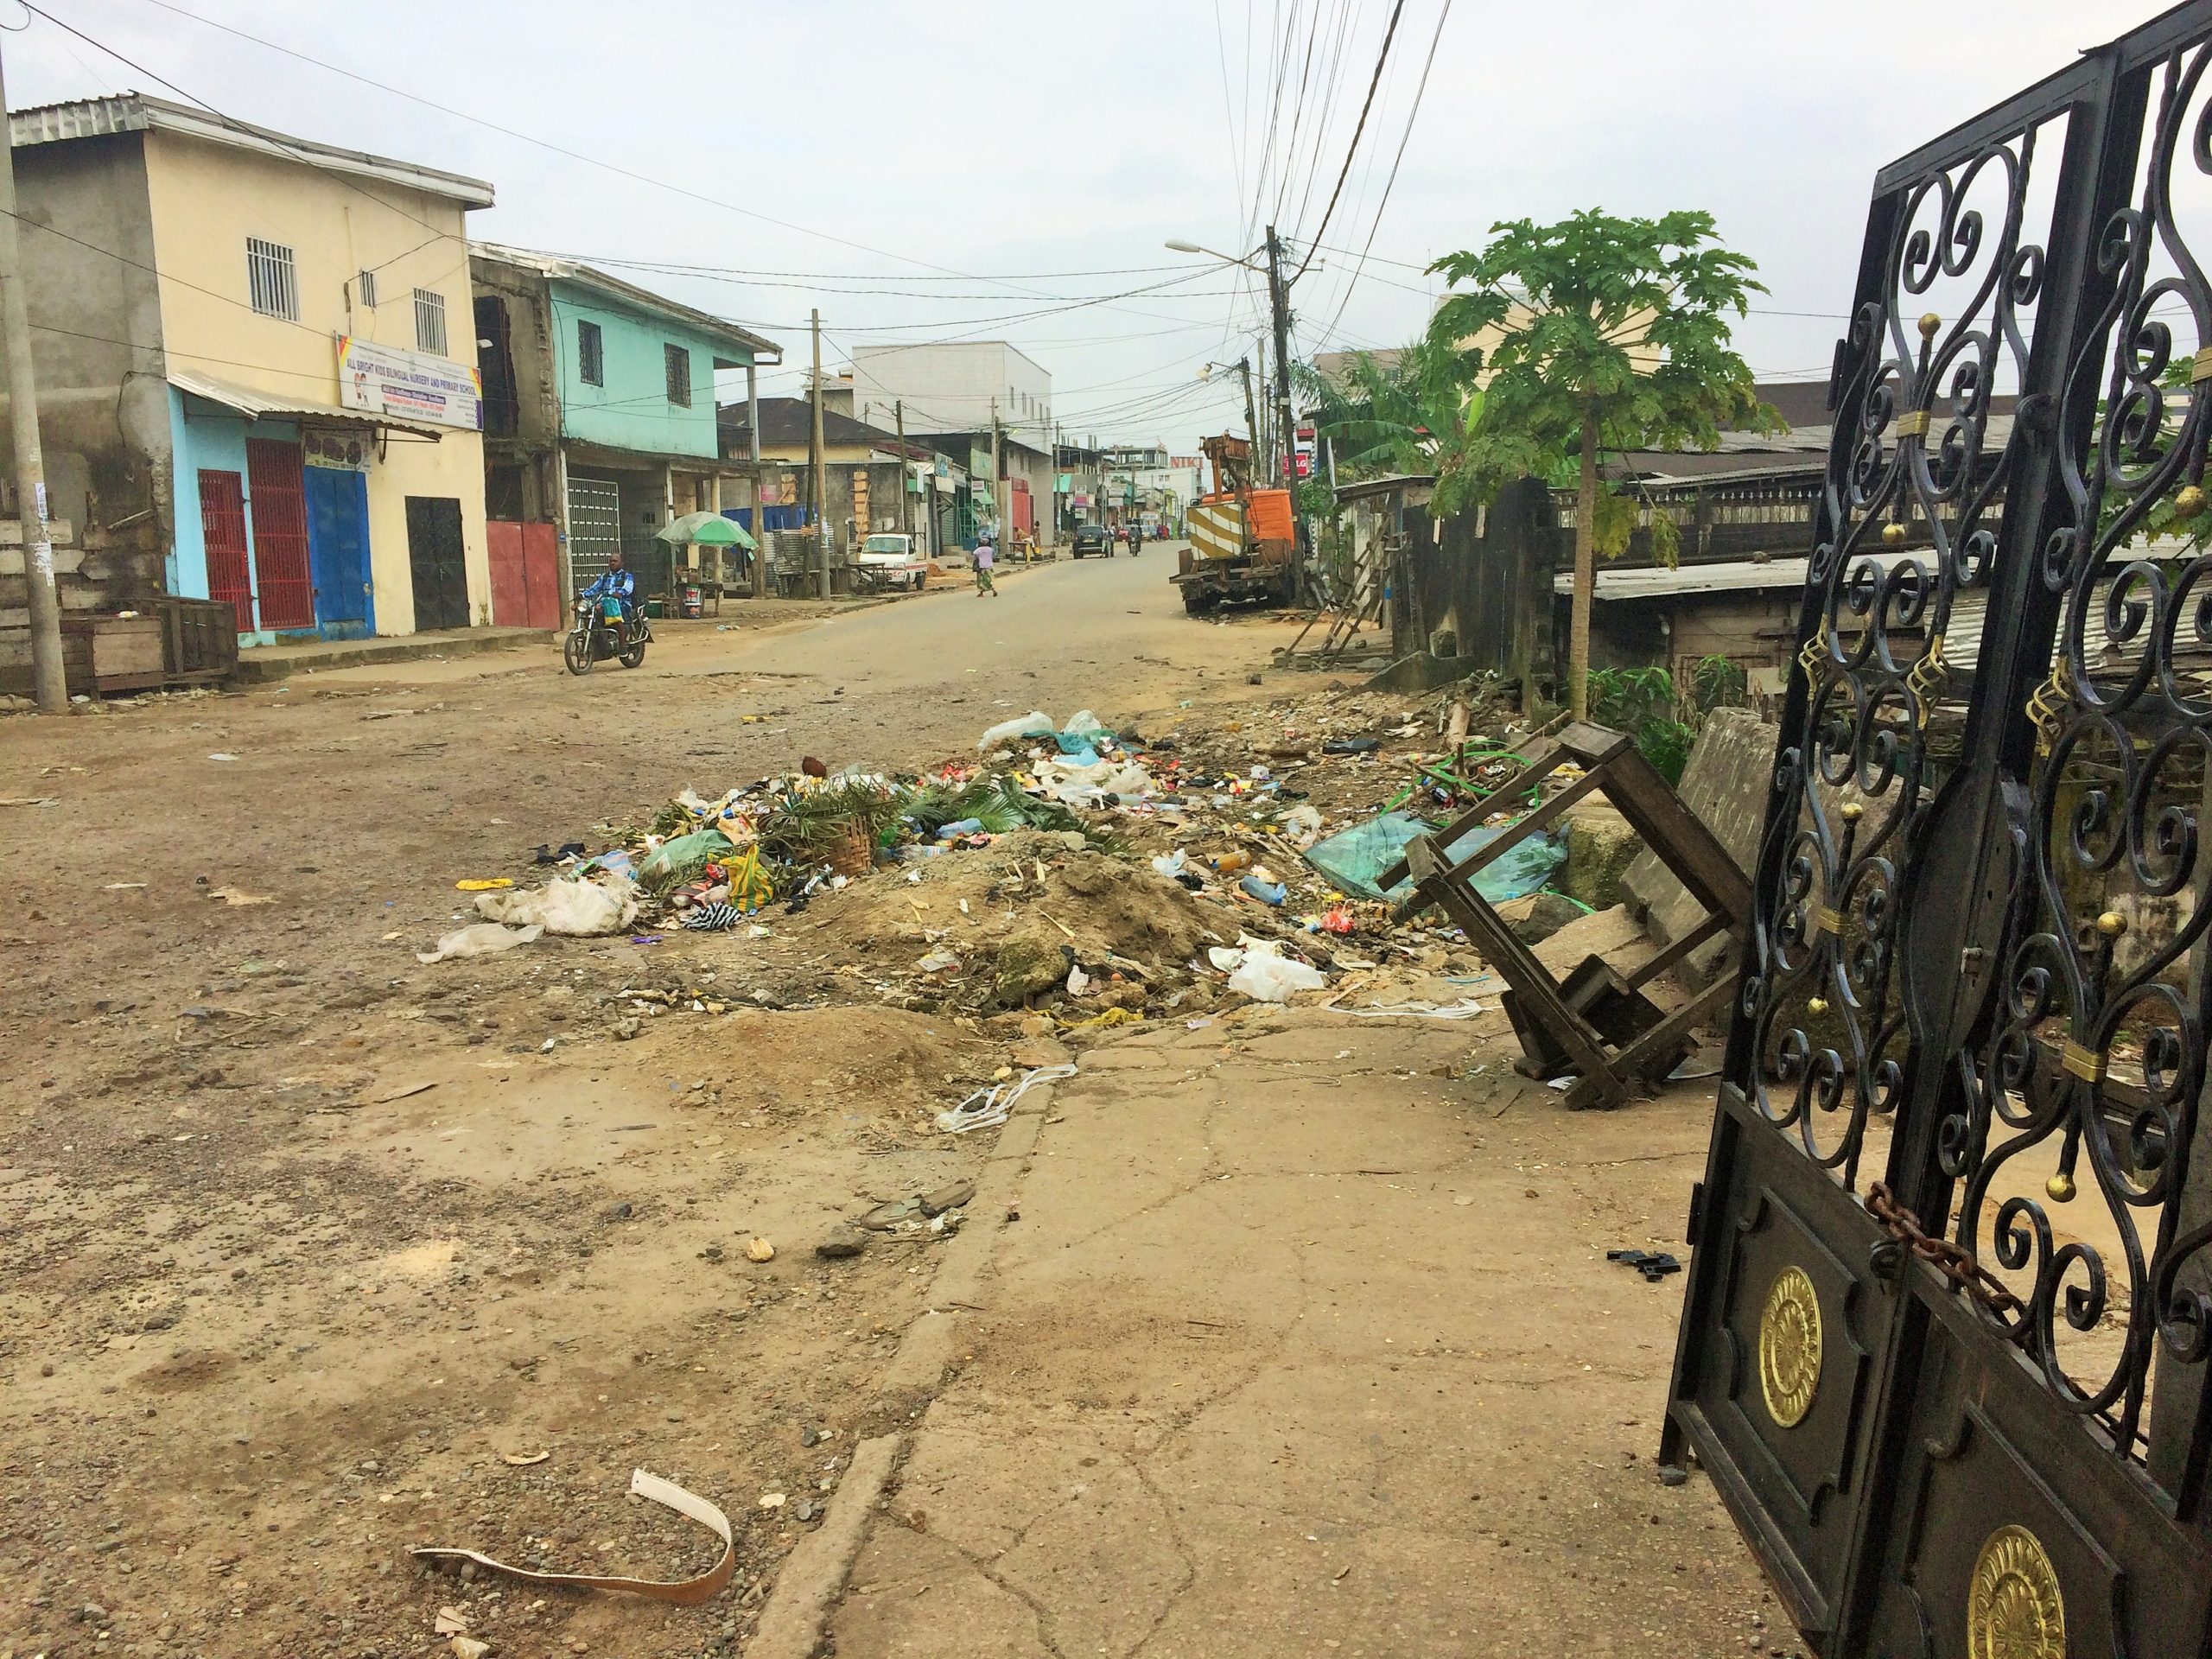 Douala, dimanche 17 octobre 2021, la poubelle dans laquelle le corps sans vie a été découverte